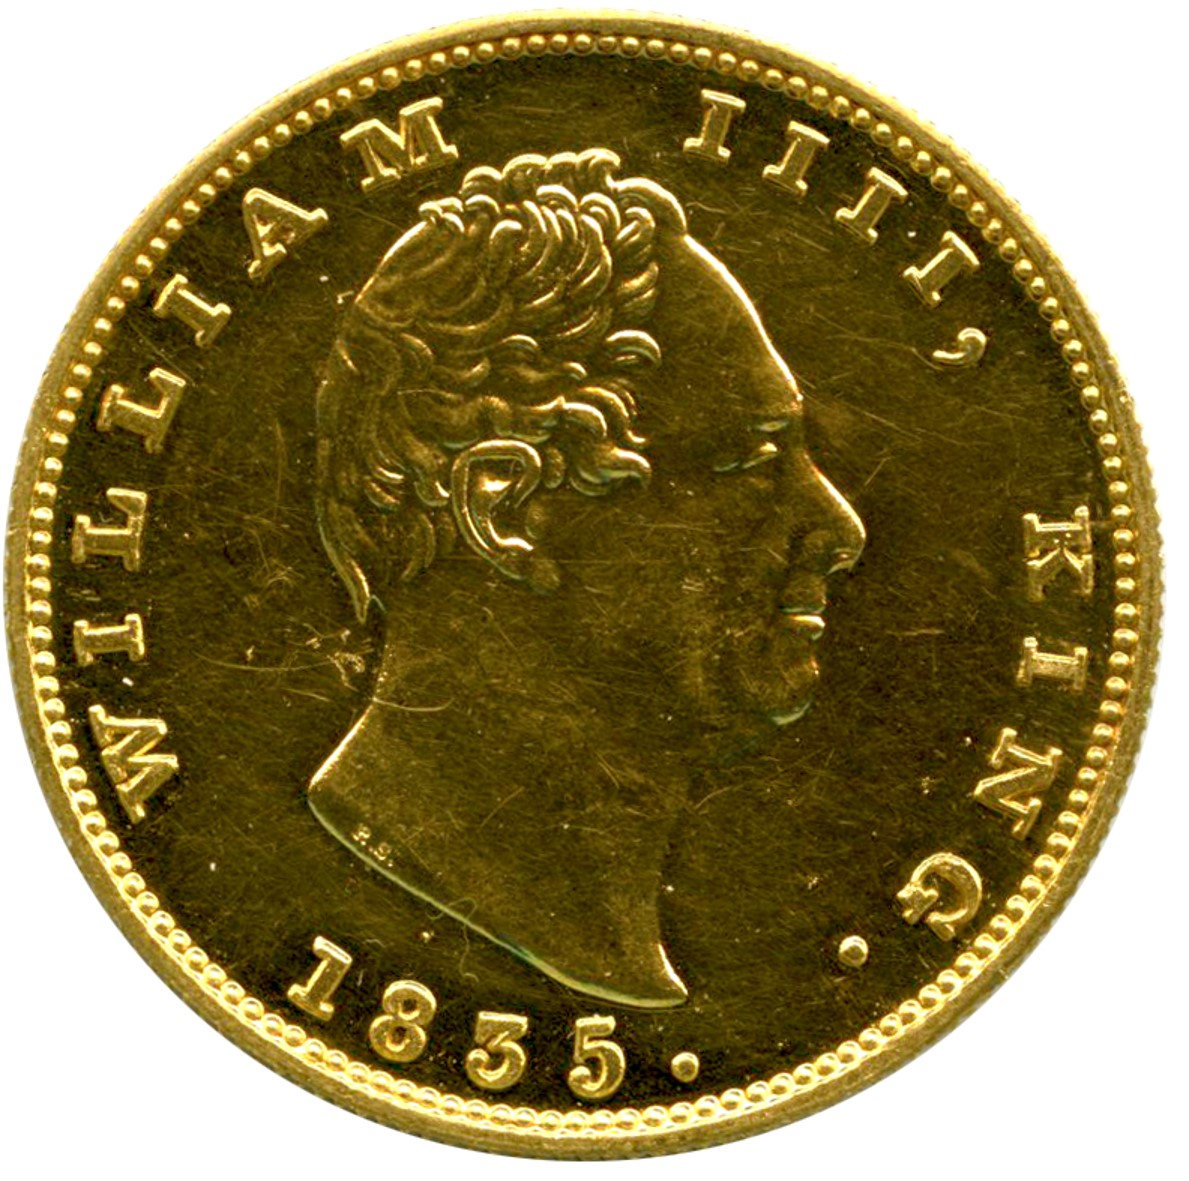 インド 2モハール金貨 1835年 ウィリアム4世